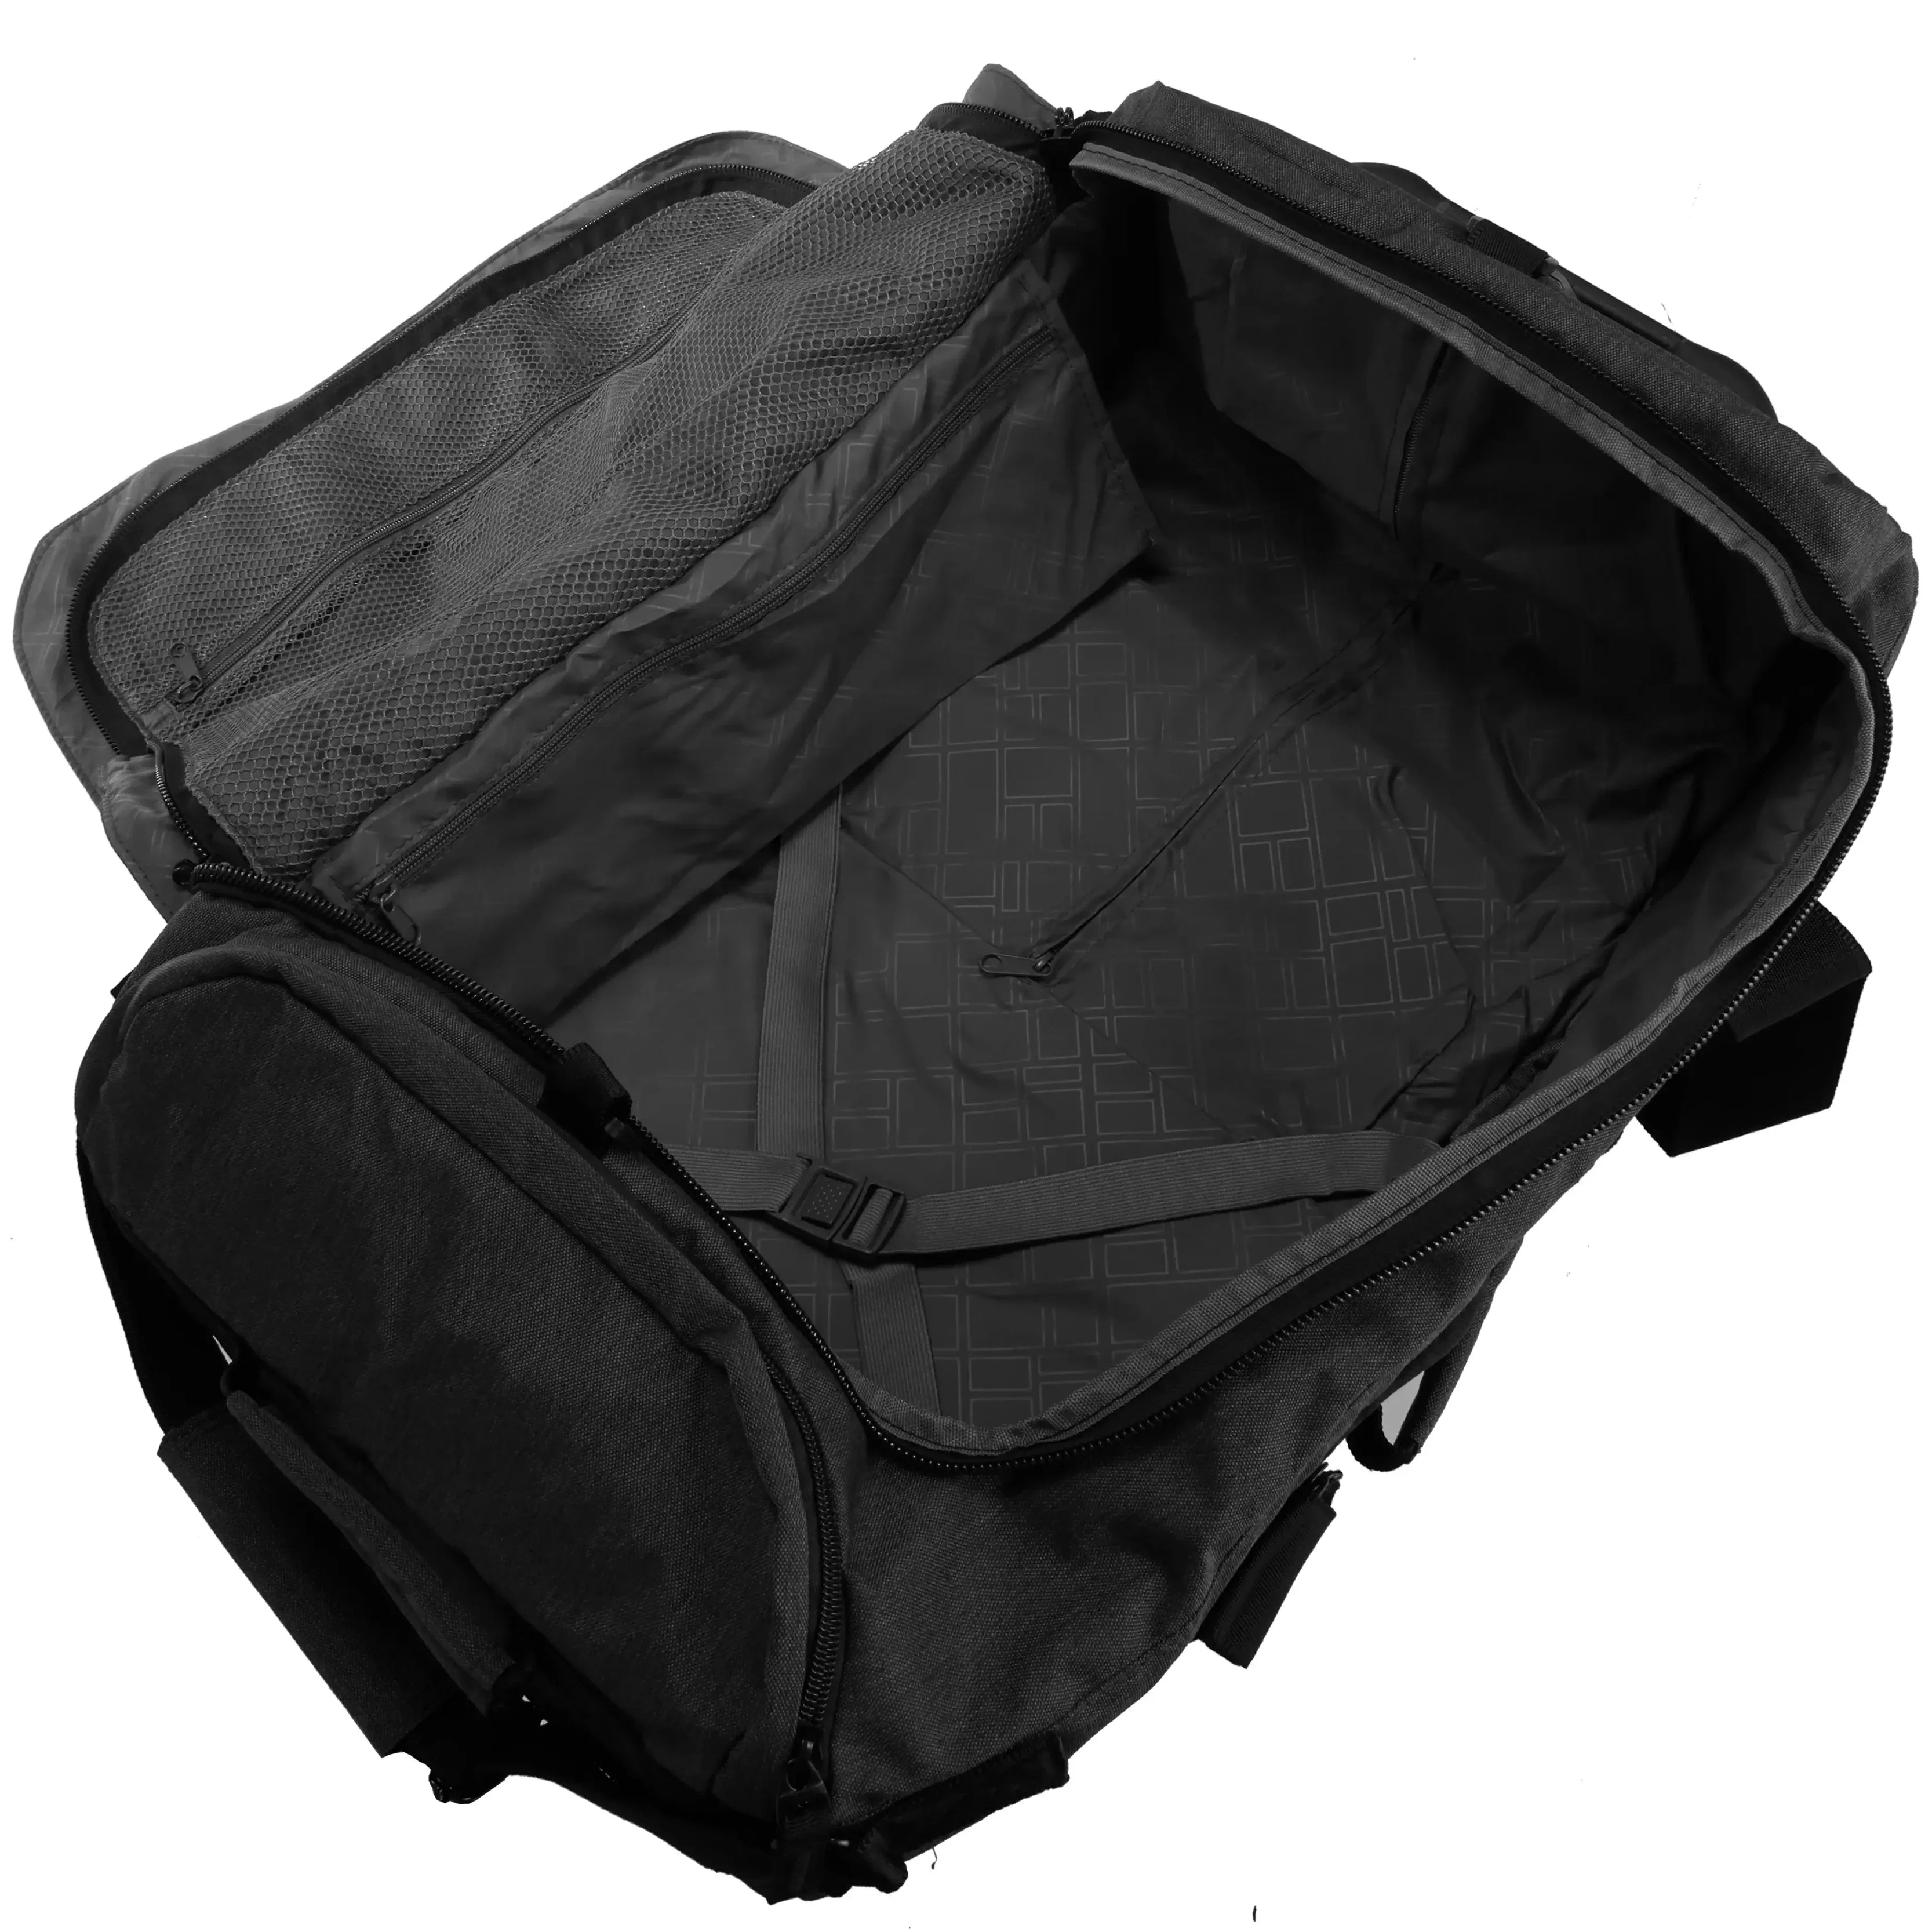 koffer-direkt.de Rolling travel bag L 62 cm - anthracite